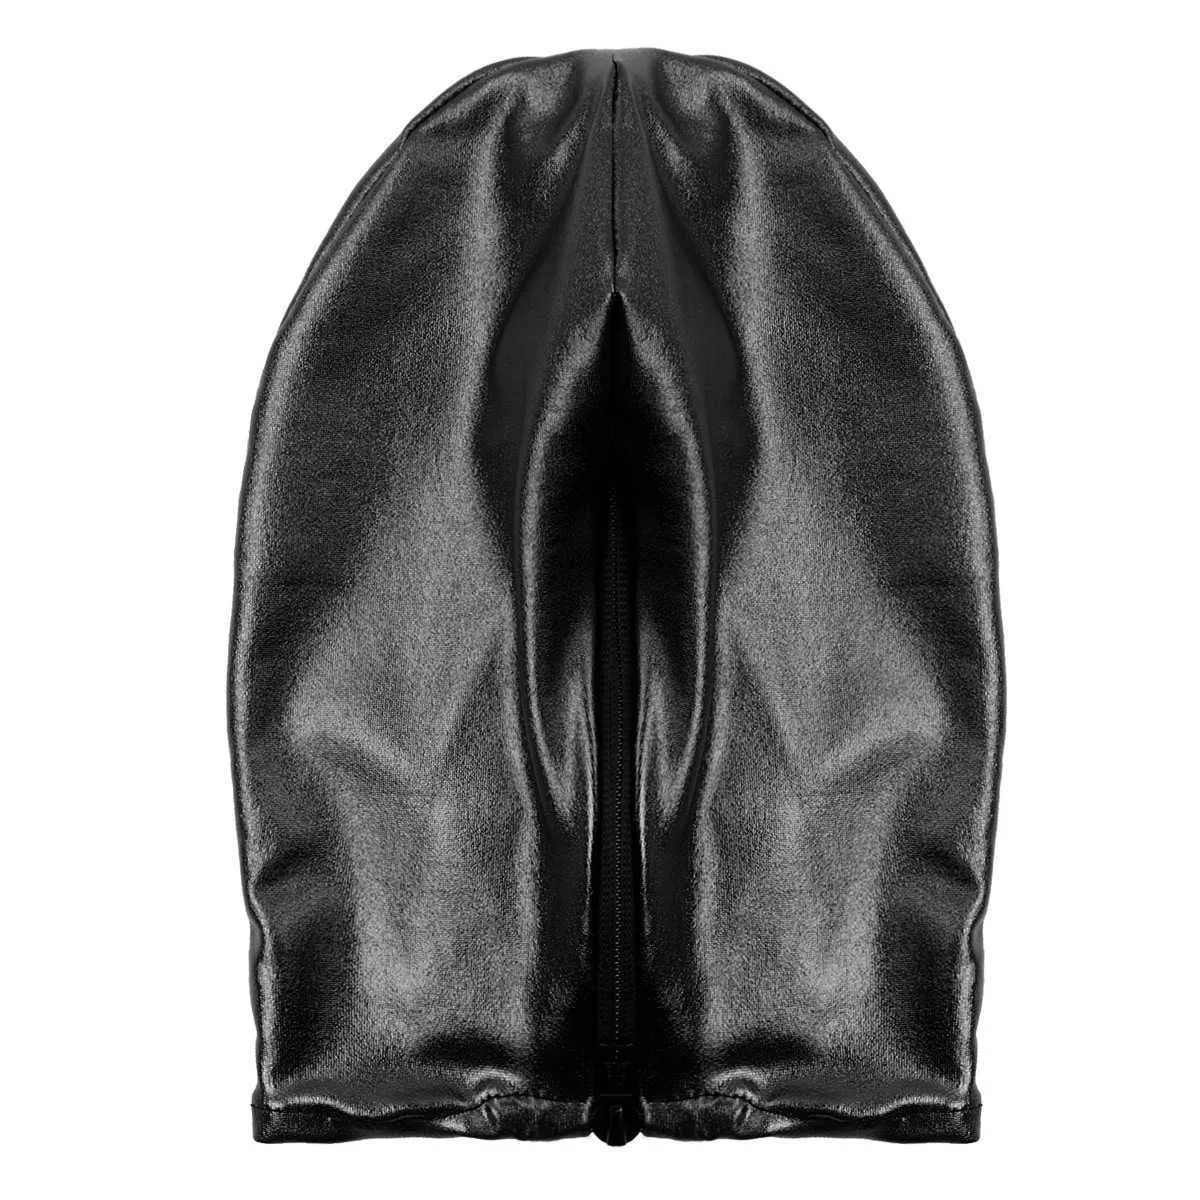 Sexy Unisexe Men Femmes Cosplay Face Mask Hood pour le jeu de rôle Costume Latex brillant métallique ouverte de bouche ouverte Headgear Full Face Mask Q09526935